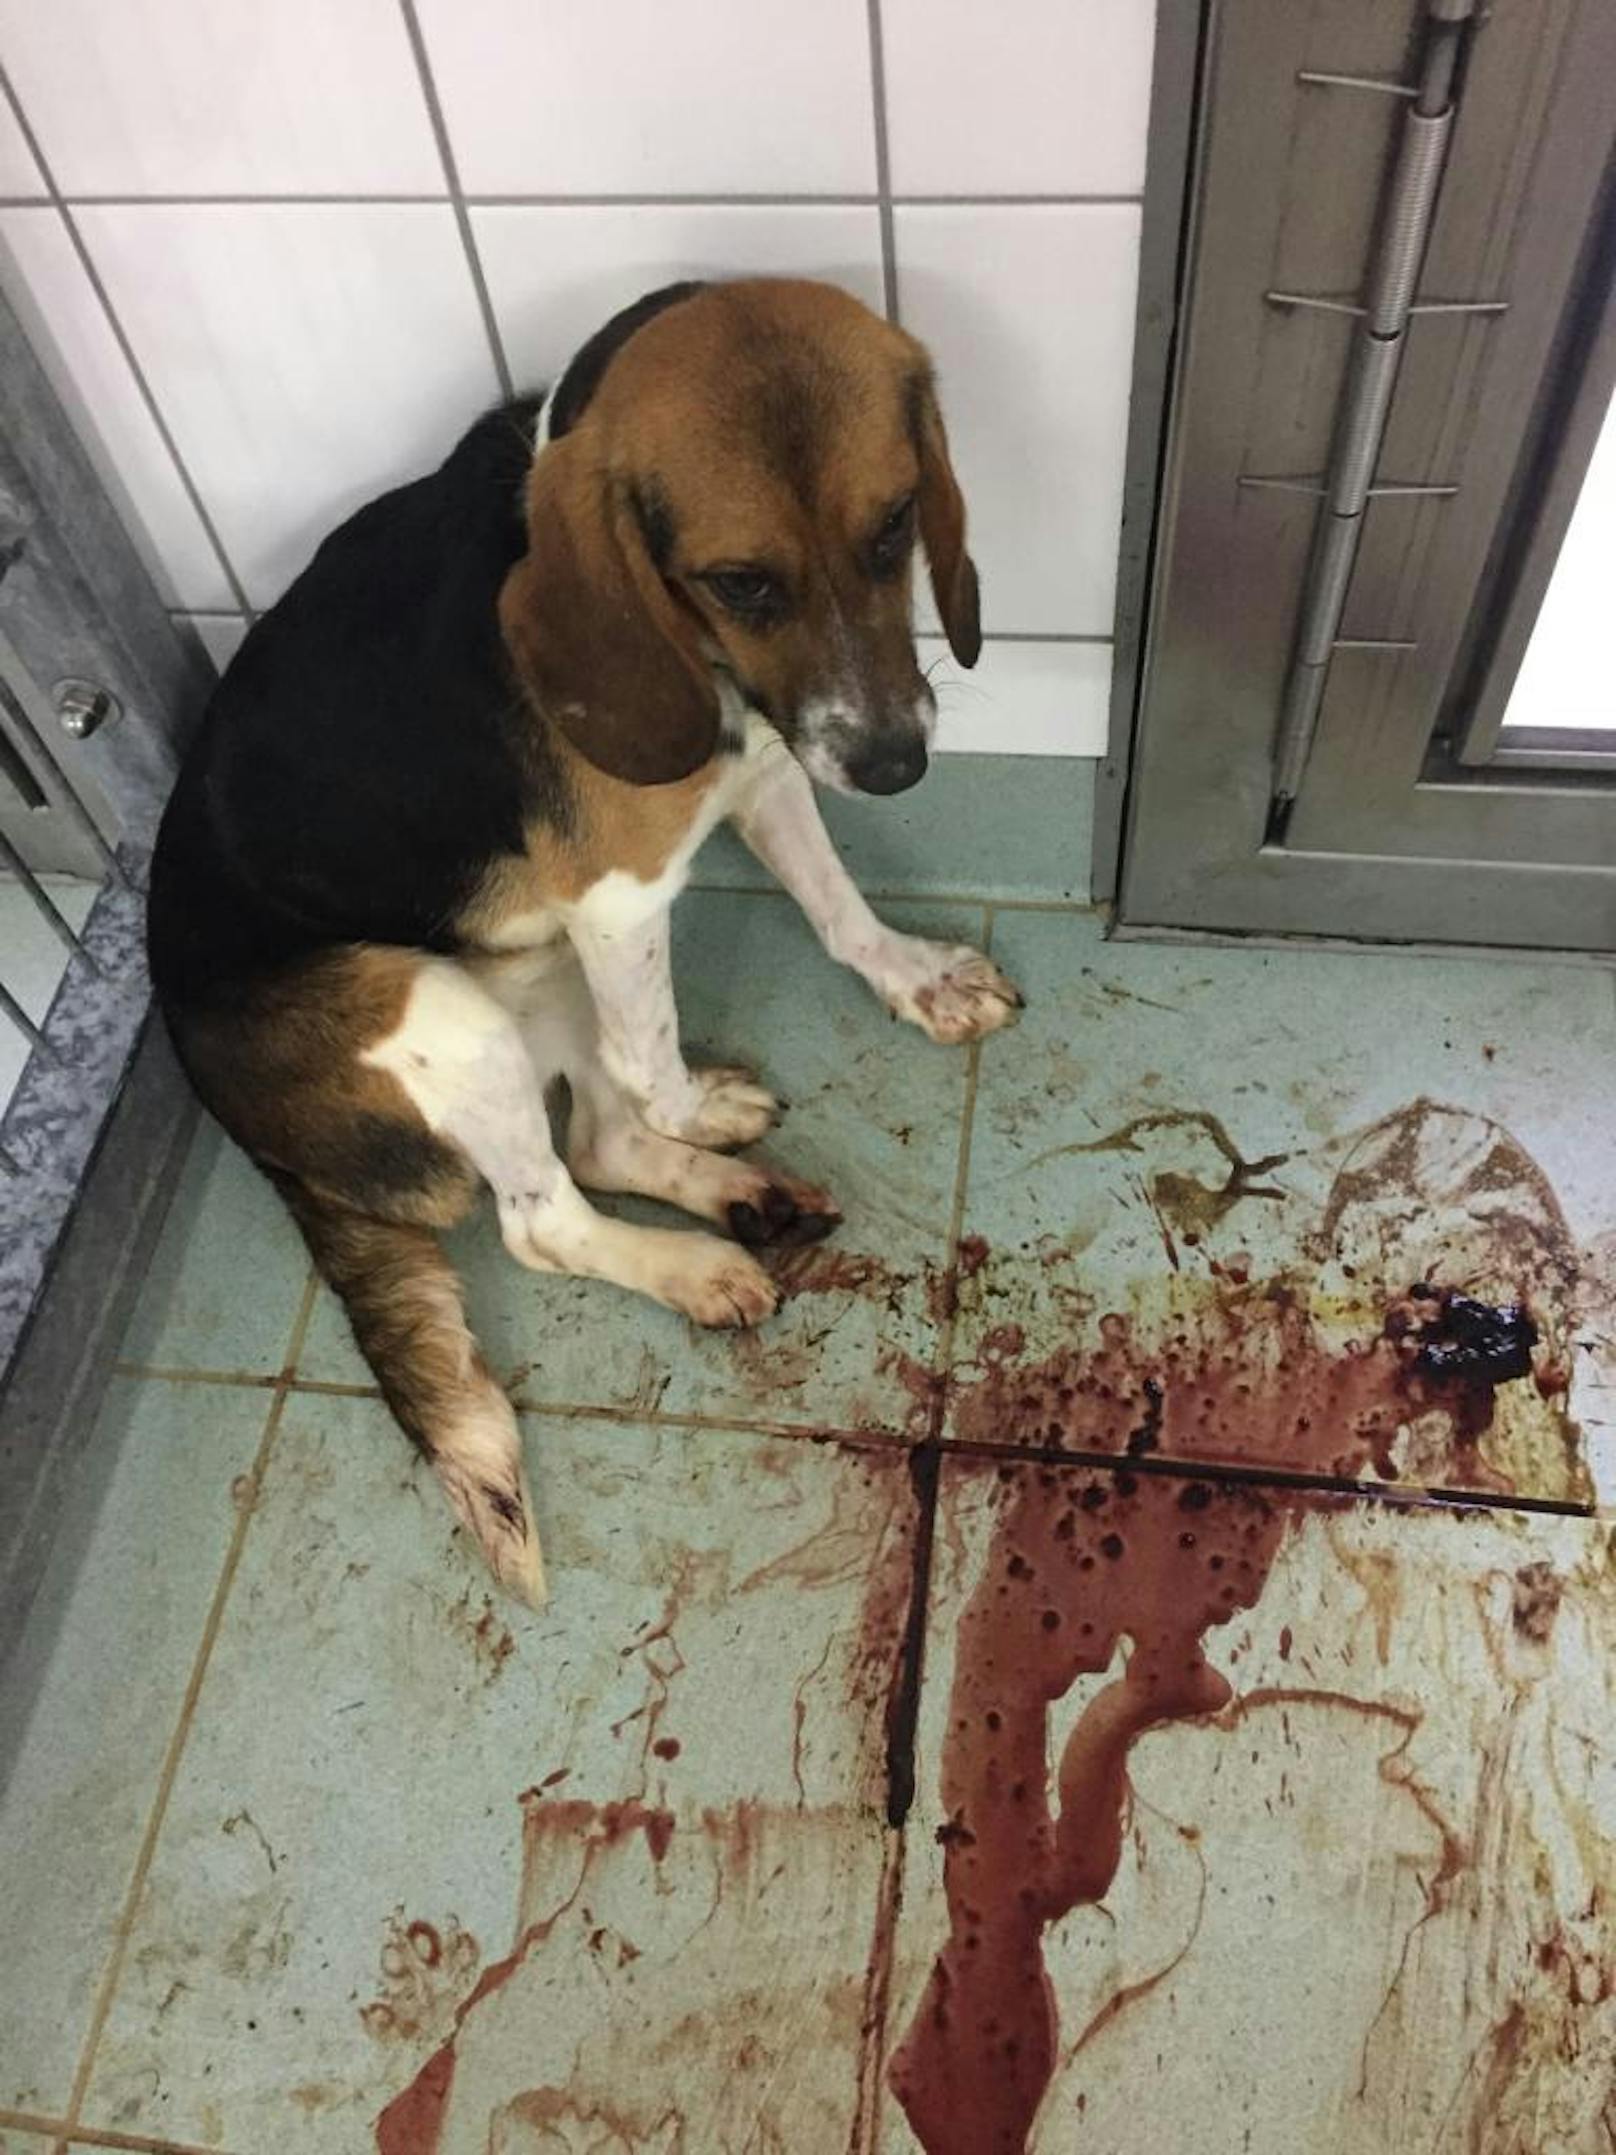 Die Aufnahmen zeigen unter anderem wie die Hunde, nachdem ihnen Schläuche oder Kapseln in den Hals gesteckt wurden, stark zu bluten beginnen.